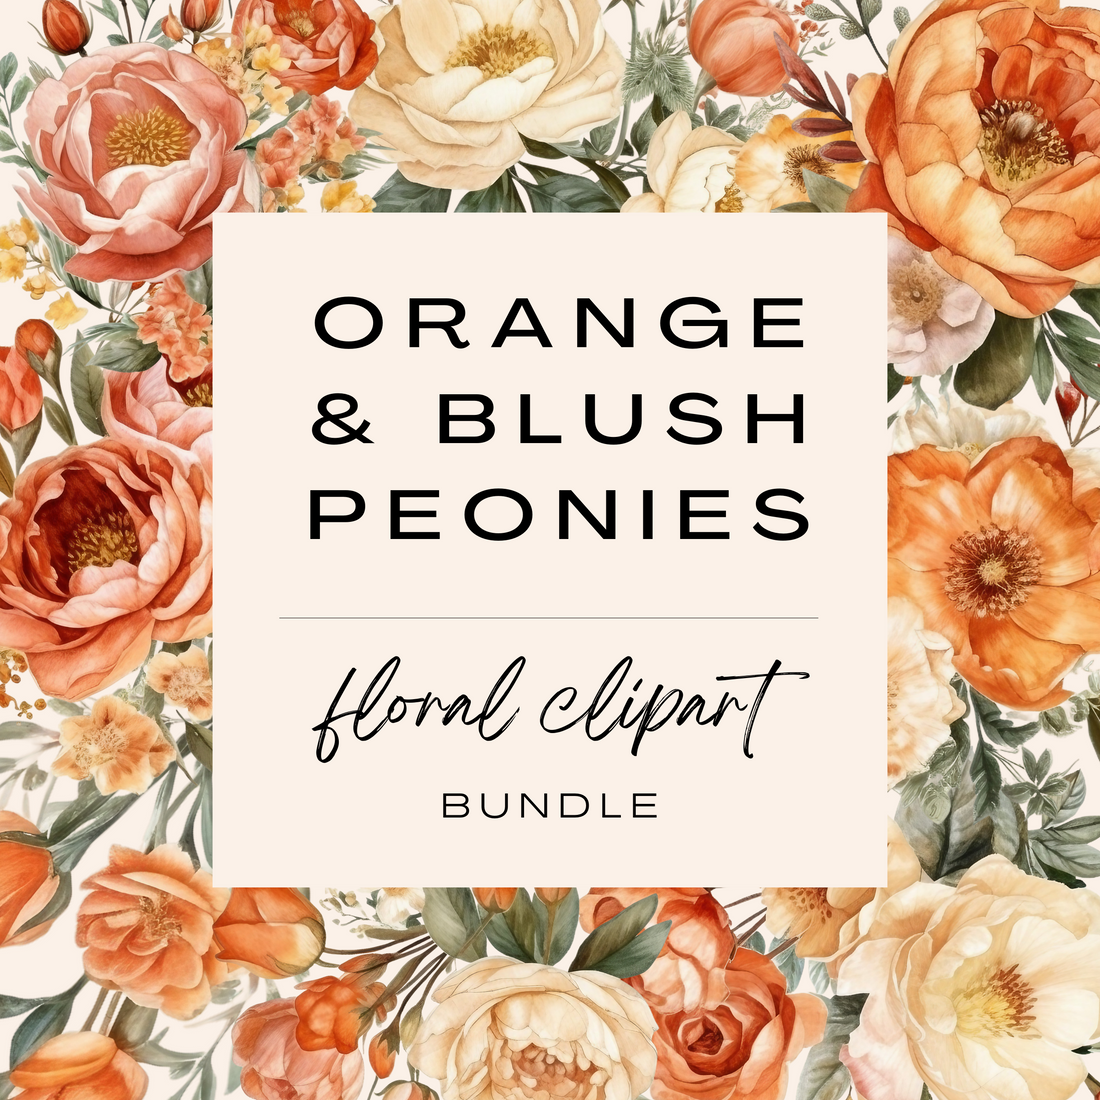 Orange &amp; Blush Peony Clipart Bundle (Commercial Use)